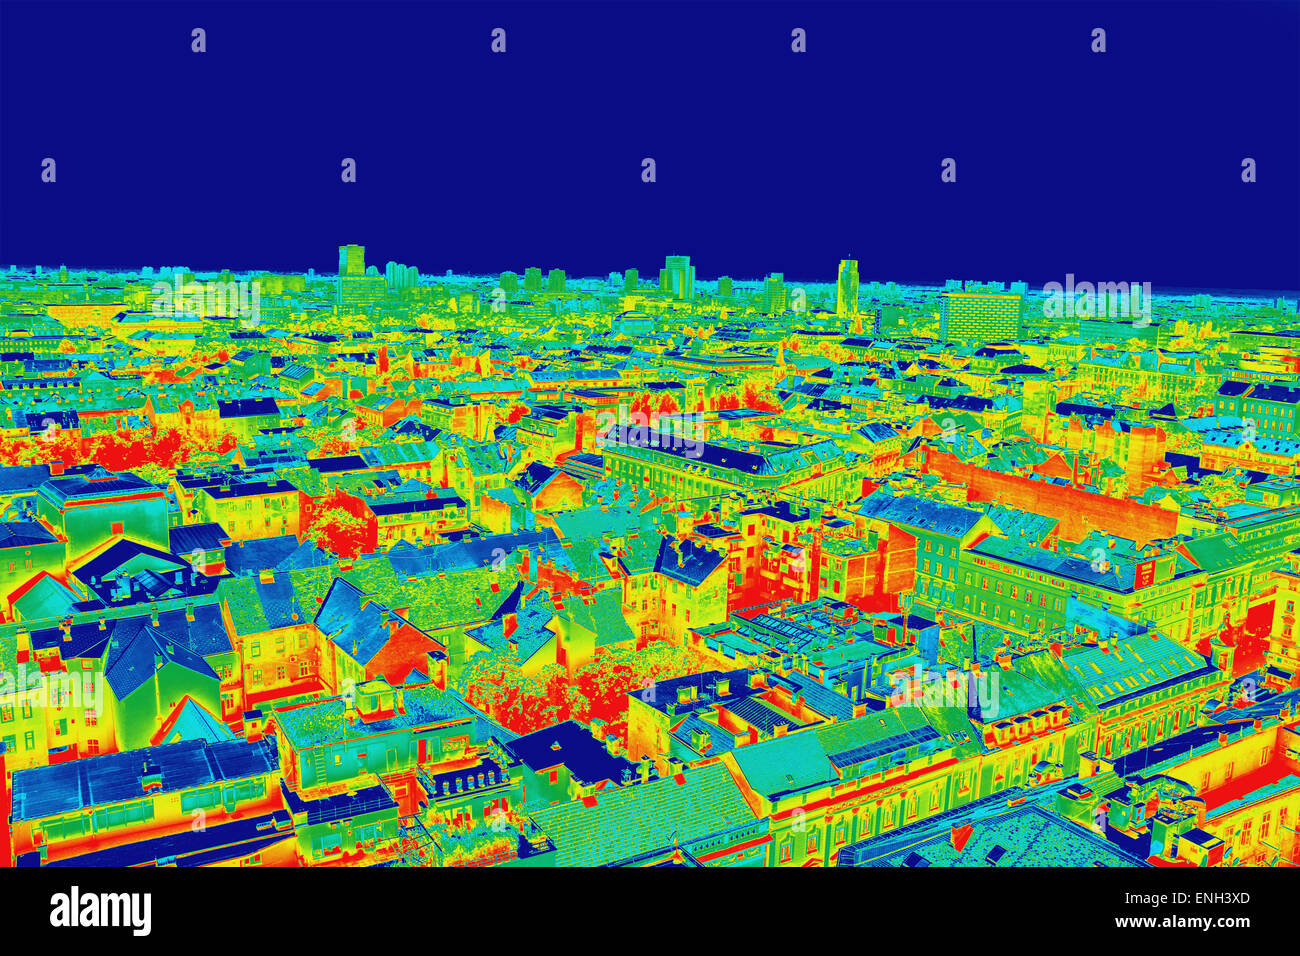 Infrarot-Thermografie-Bild-Panorama von Zagreb, zeigt Differenz Temperatur Stockfoto